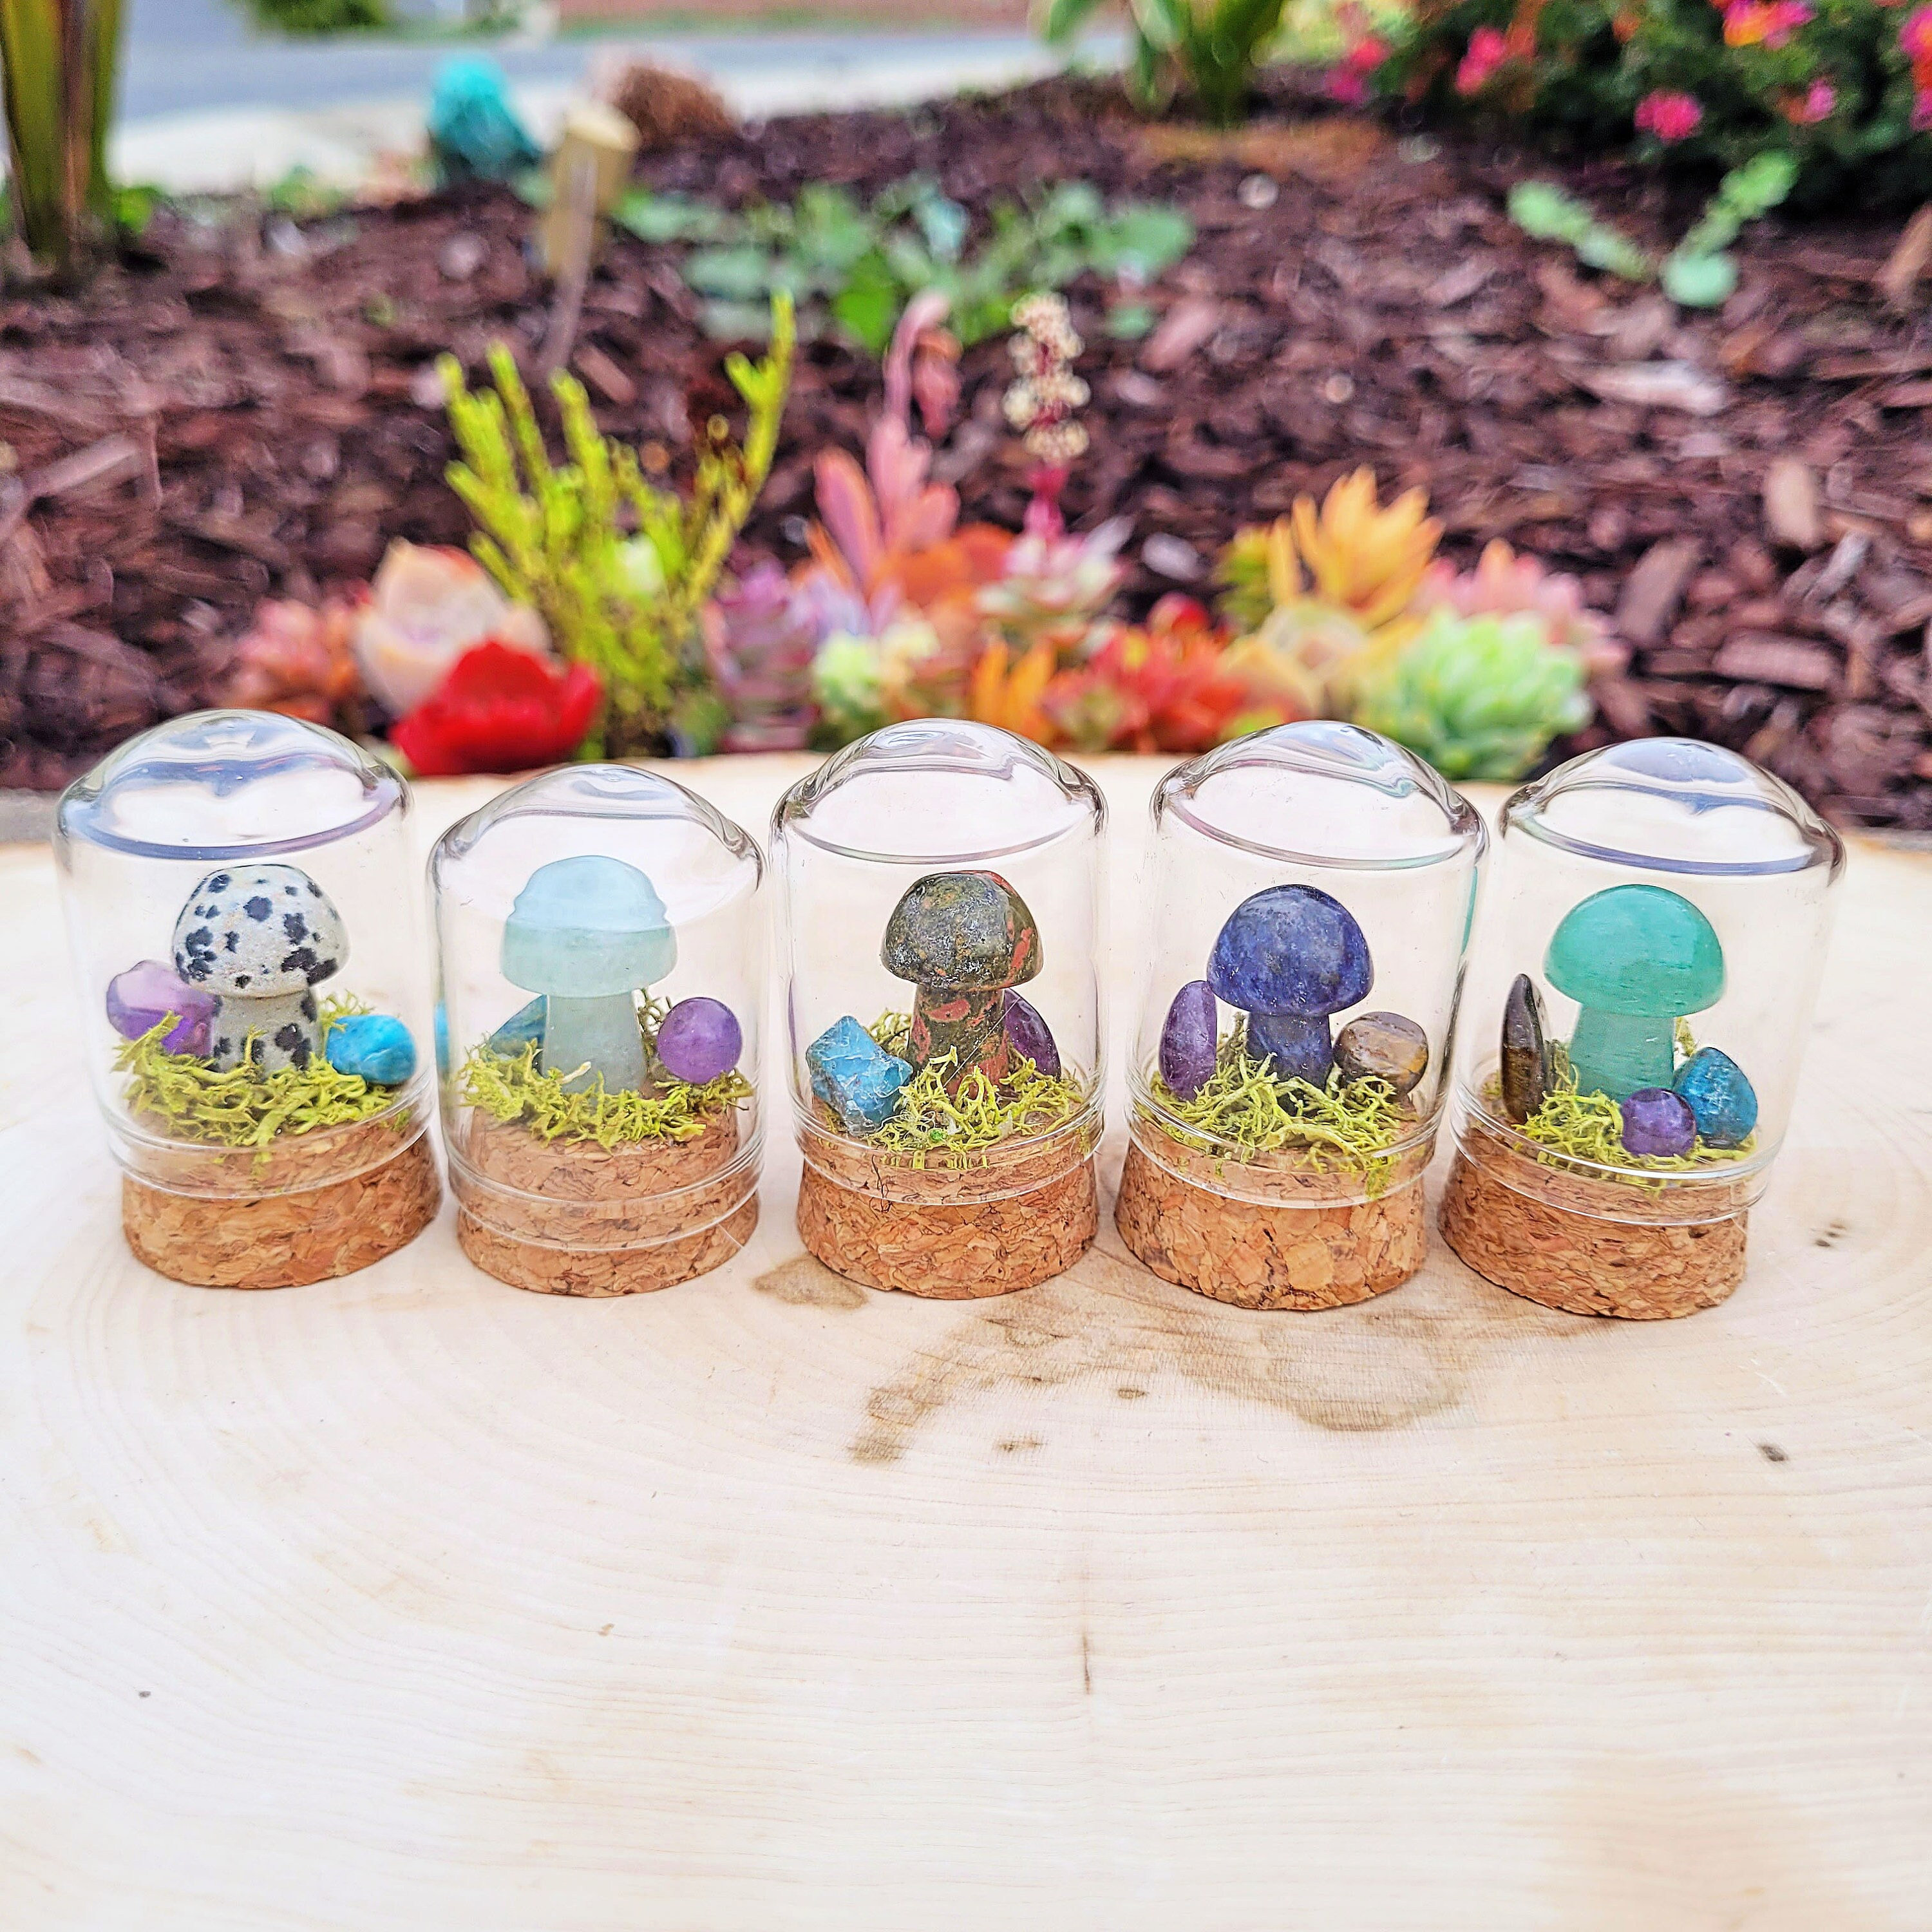 NUOBESTY 10PCS Simulation Resin Mushroom Mini Mushroom Figurine Mushroom  Accessories Fairy Mushroom Figurines Fake Mushrooms Glass terrariums for